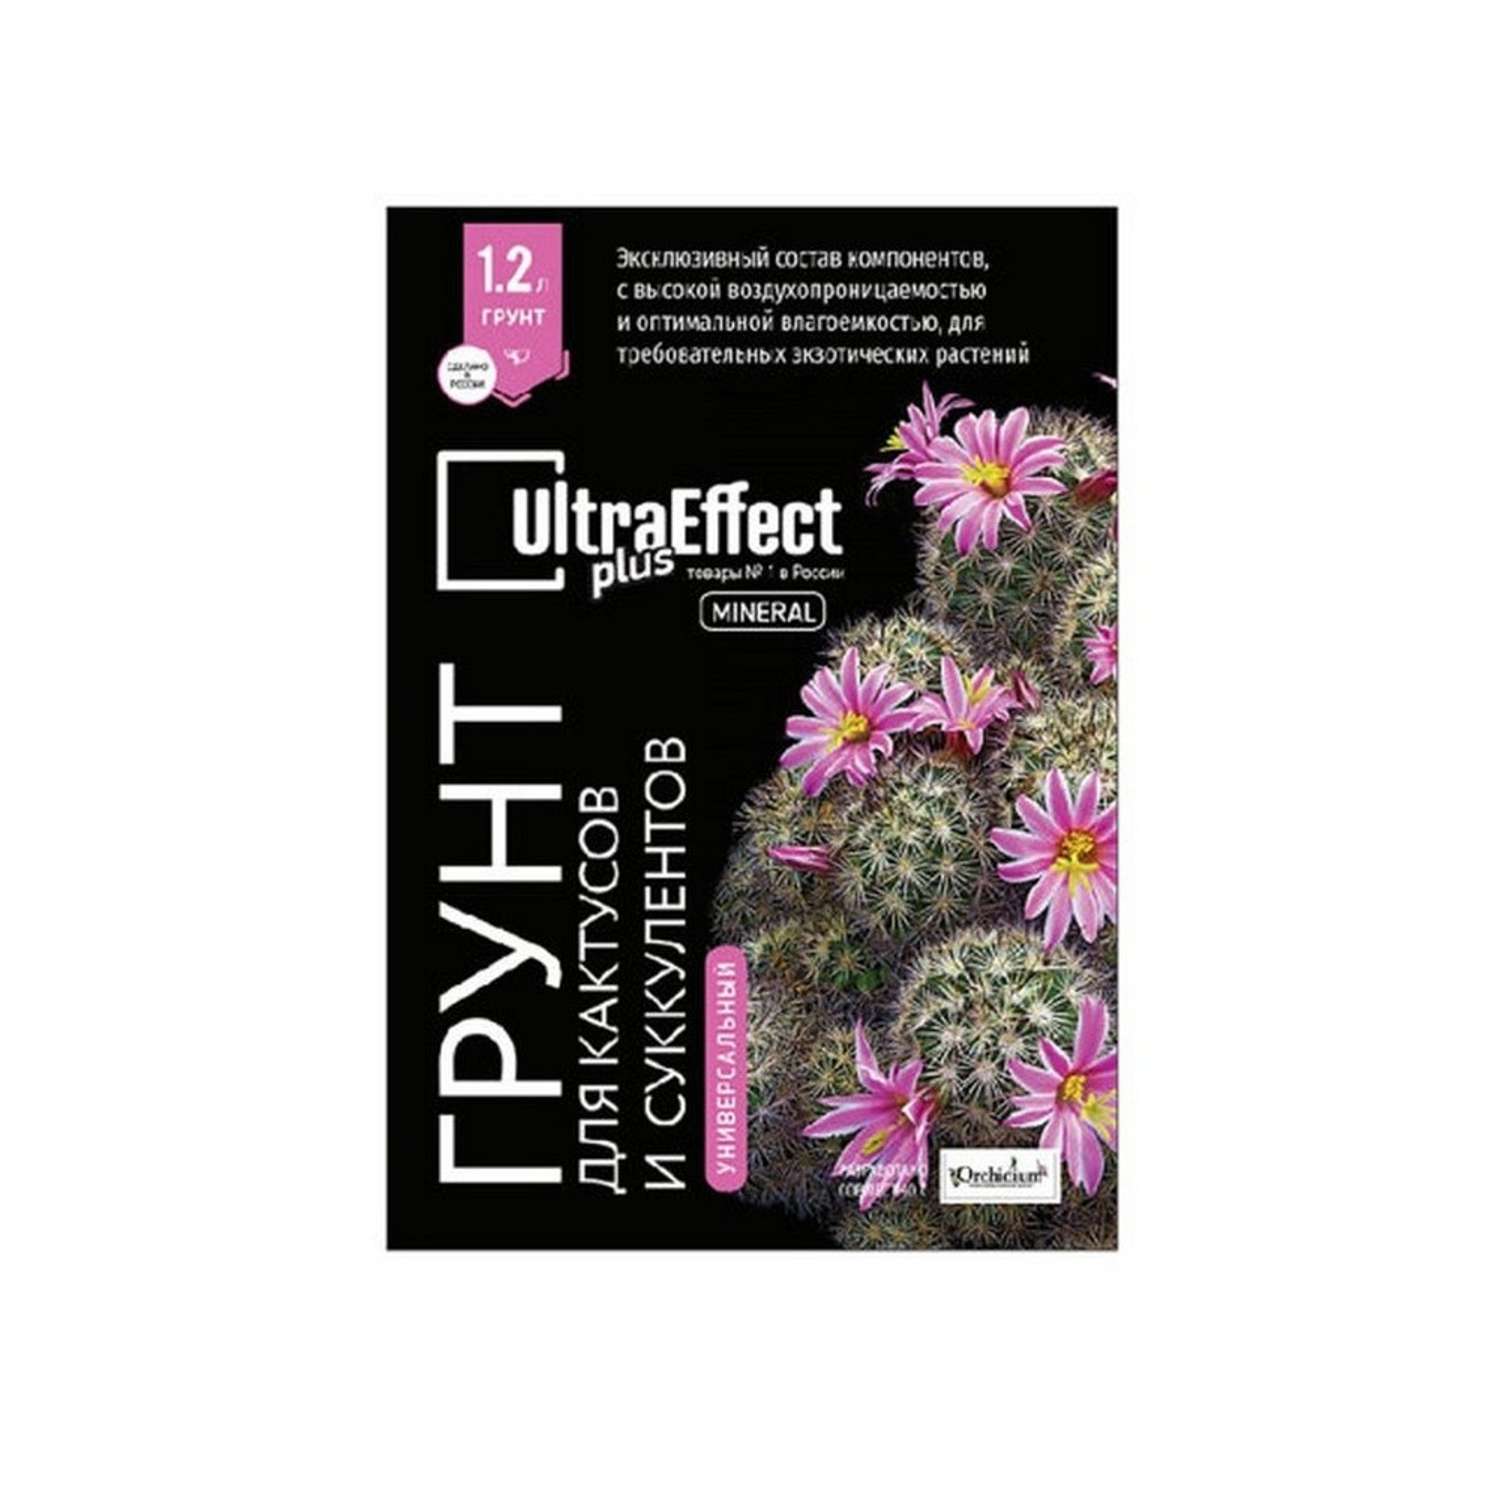 Грунт EffectBio Универсальный для Кактусов и Суккулентов UltraEffect Plus Mineral 1.2 л - фото 1